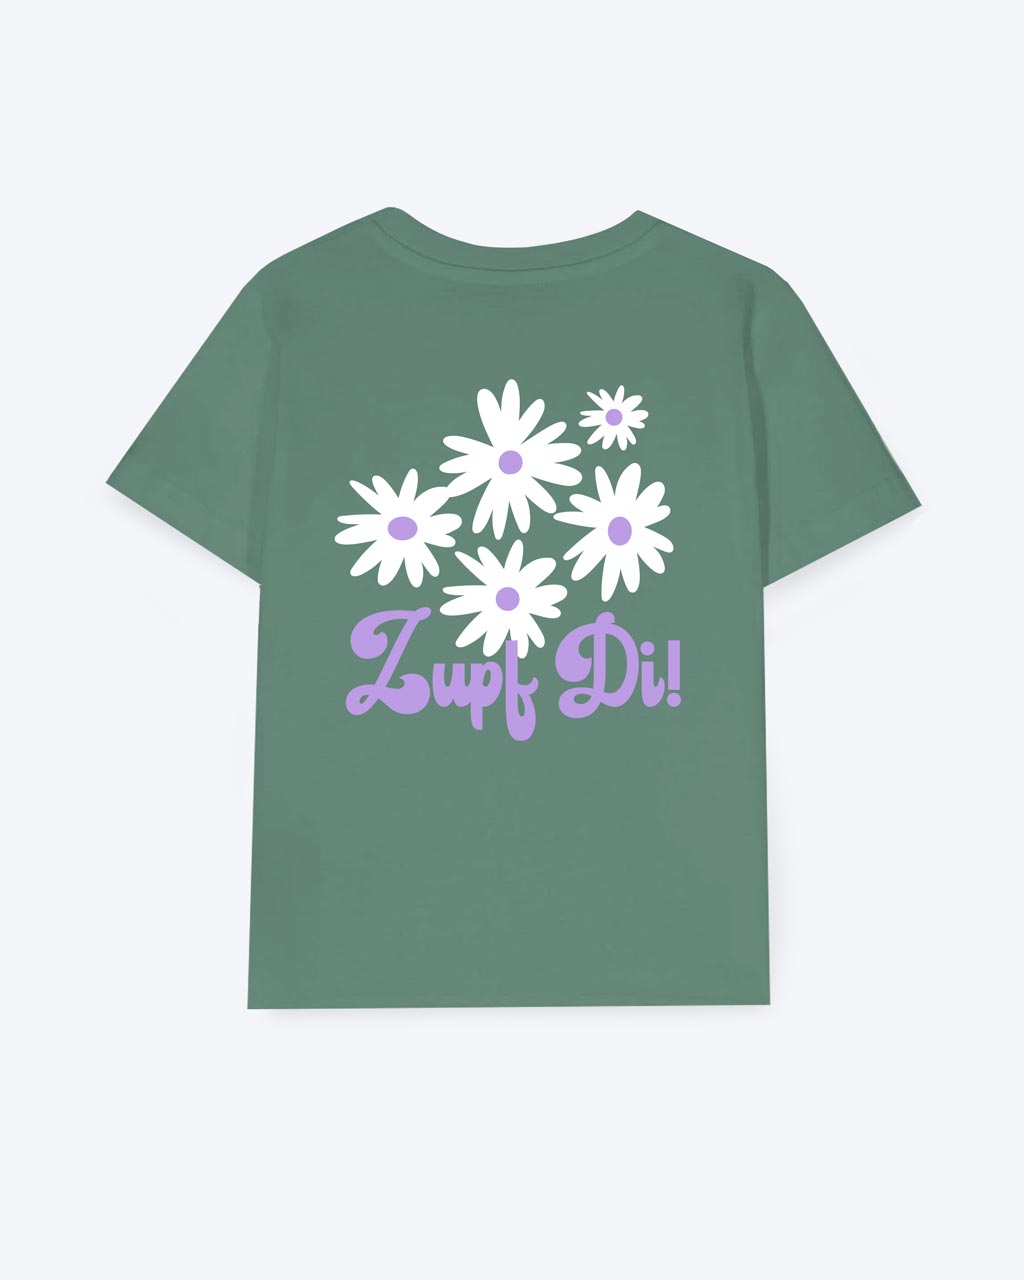 Ein grünes T-Shirt mit einem weißen Blumenmotiv und darunter steht in lila 